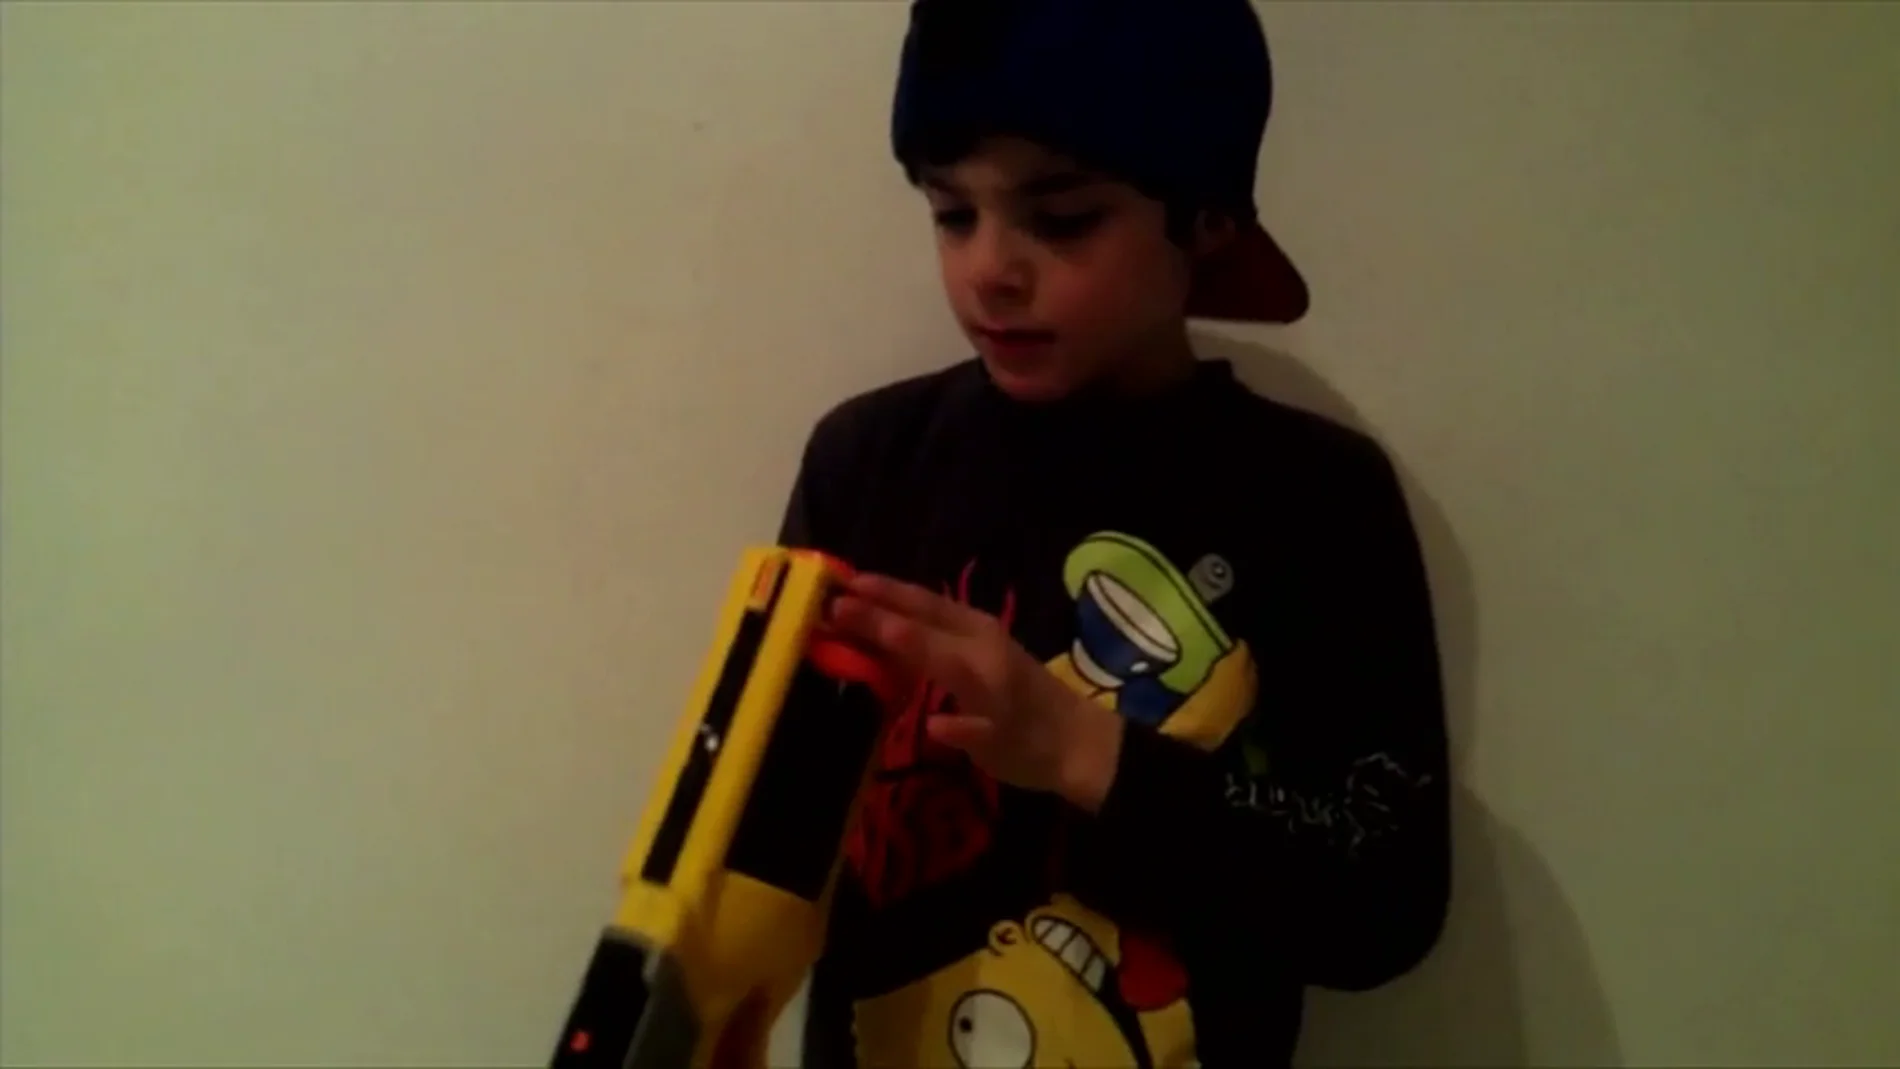 Frame 71.019347 de: Este niño se apunta con una pistola: ¿Cómo acaba el vídeo?